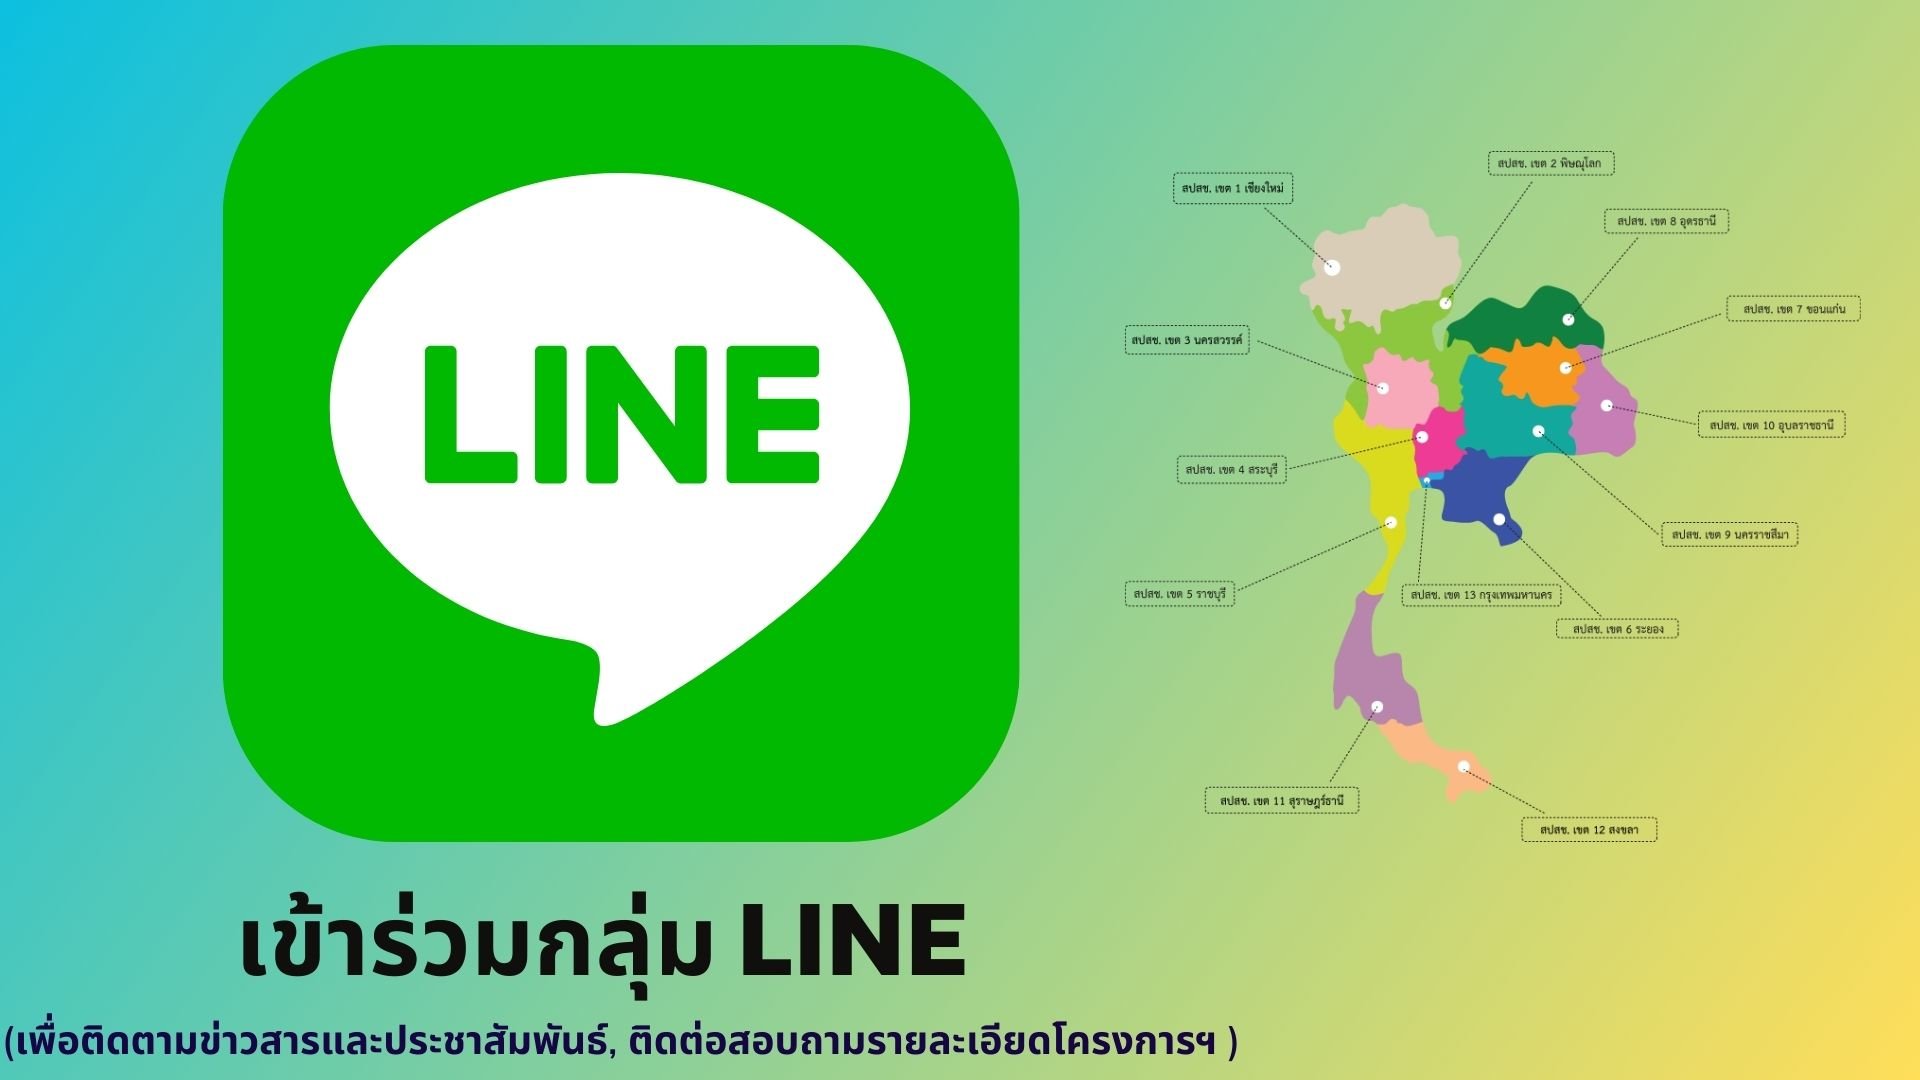 เข้าร่วมกลุ่ม Line เพื่อติดตามข่าวสารโครงการ  “การอบรมการดูแลรักษาเบาหวานให้ได้เป้าหมายรอบด้านในประเทศไทย” สําหรับ smart phone และ ipad เท่านั้น!